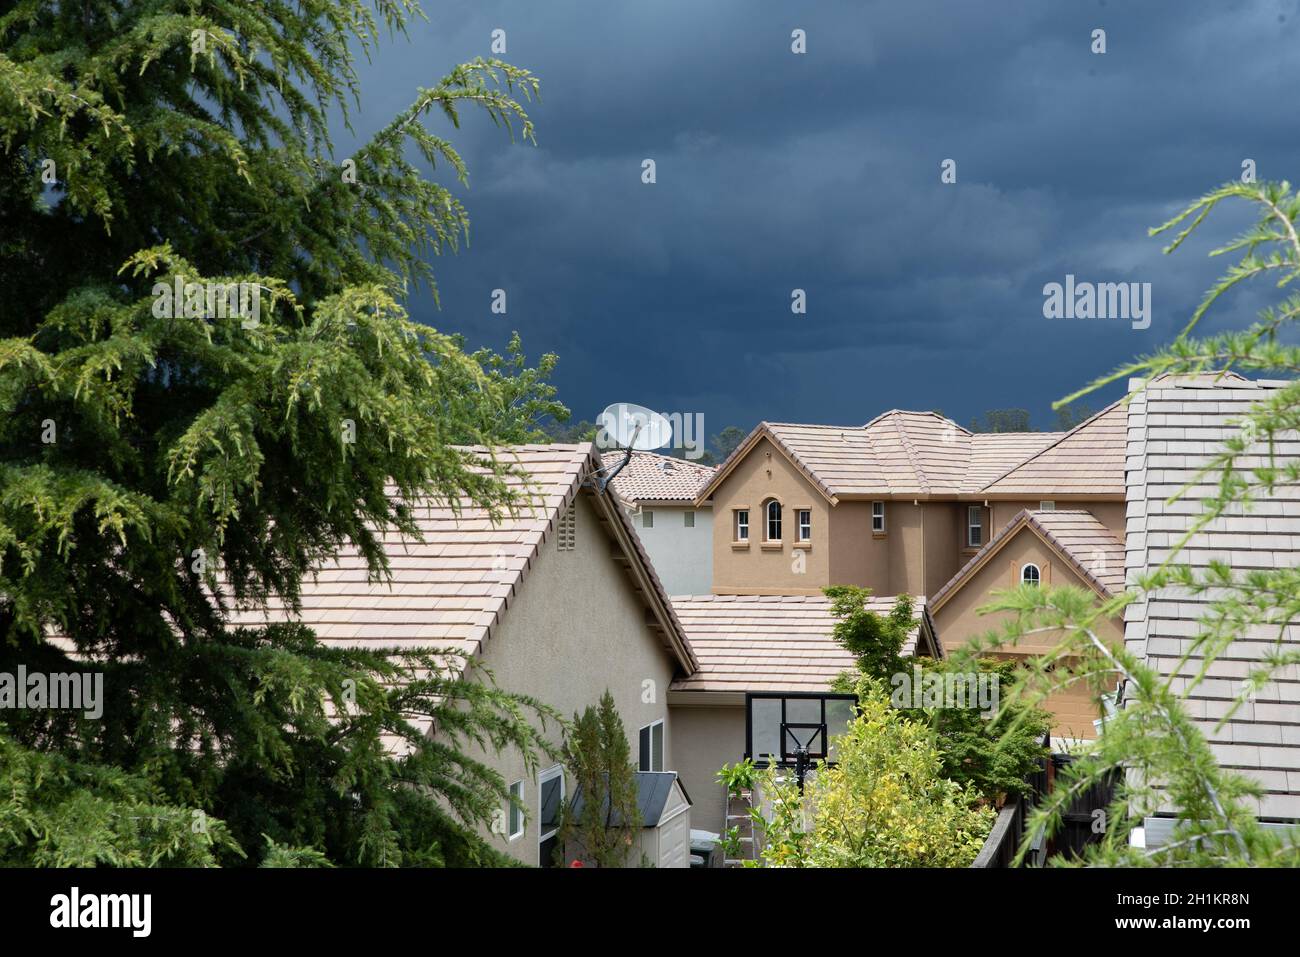 Un plat de télévision satellite apparaît sur le toit d'une maison de banlieue avec d'énormes nuages de tempête dans le ciel. Banque D'Images